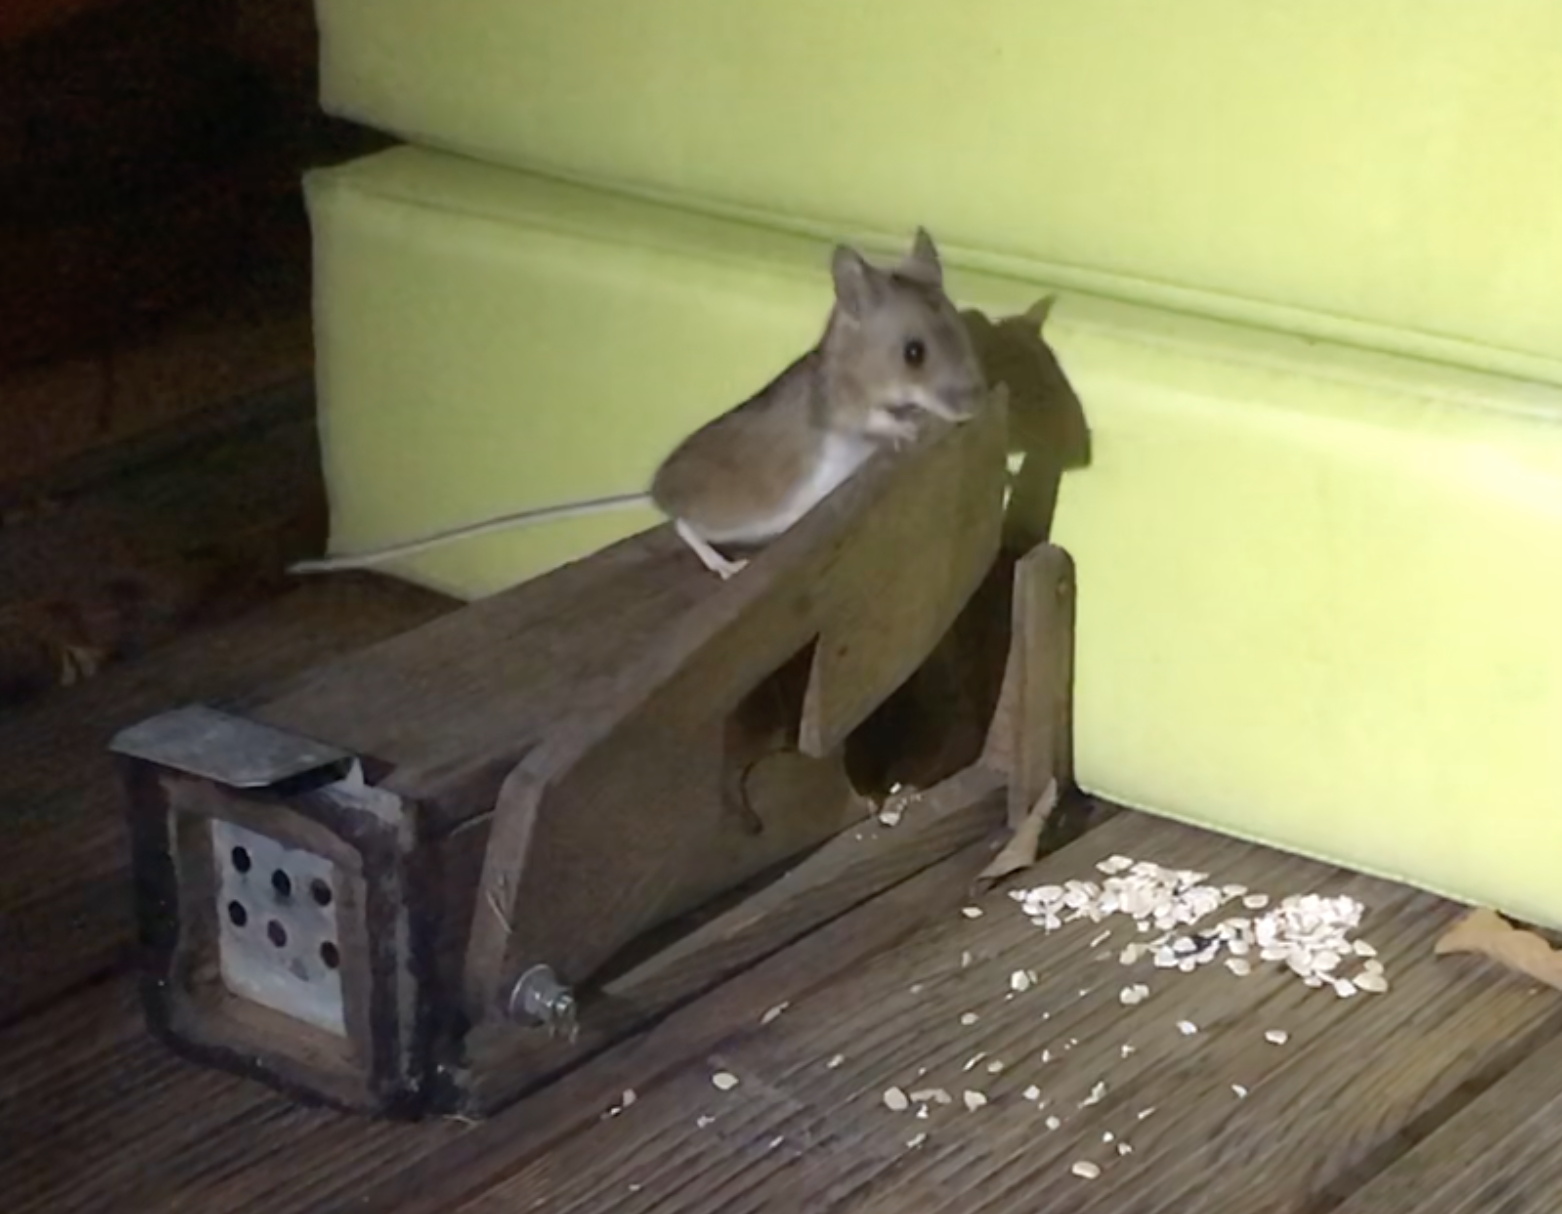 Nachtaufnahme: Maus sitz auf quaderförmiger, hölzerner noch scharfer Lebendfalle.